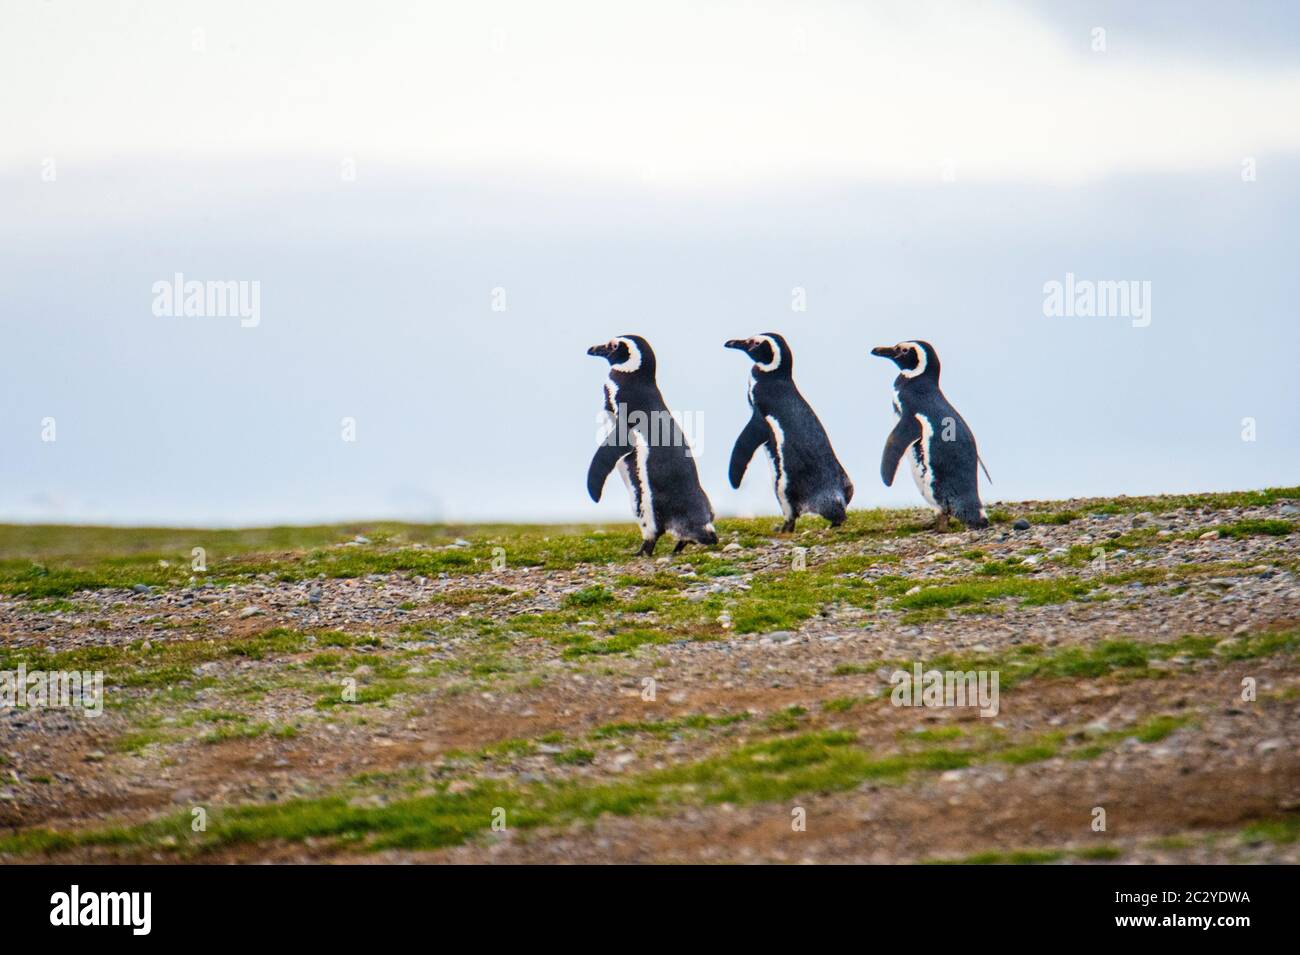 Magellanic penguins (Spheniscus magellanicus) in barren scenery, Patagonia, Chile, South America Stock Photo